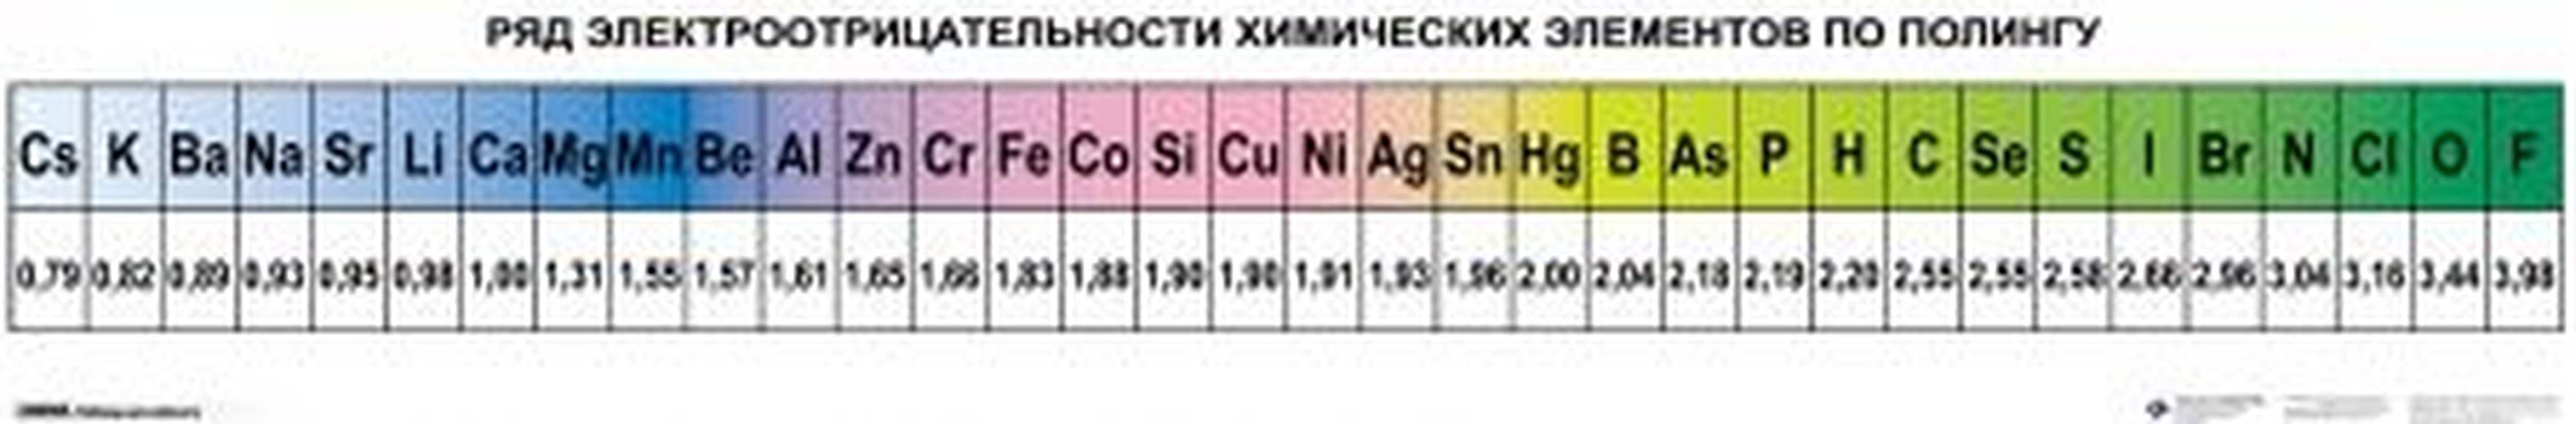 Справочные таблицы для кабинетов химии  (5-11 кл), Комплект таблиц и карточек, 14 таблиц (50х70 см);